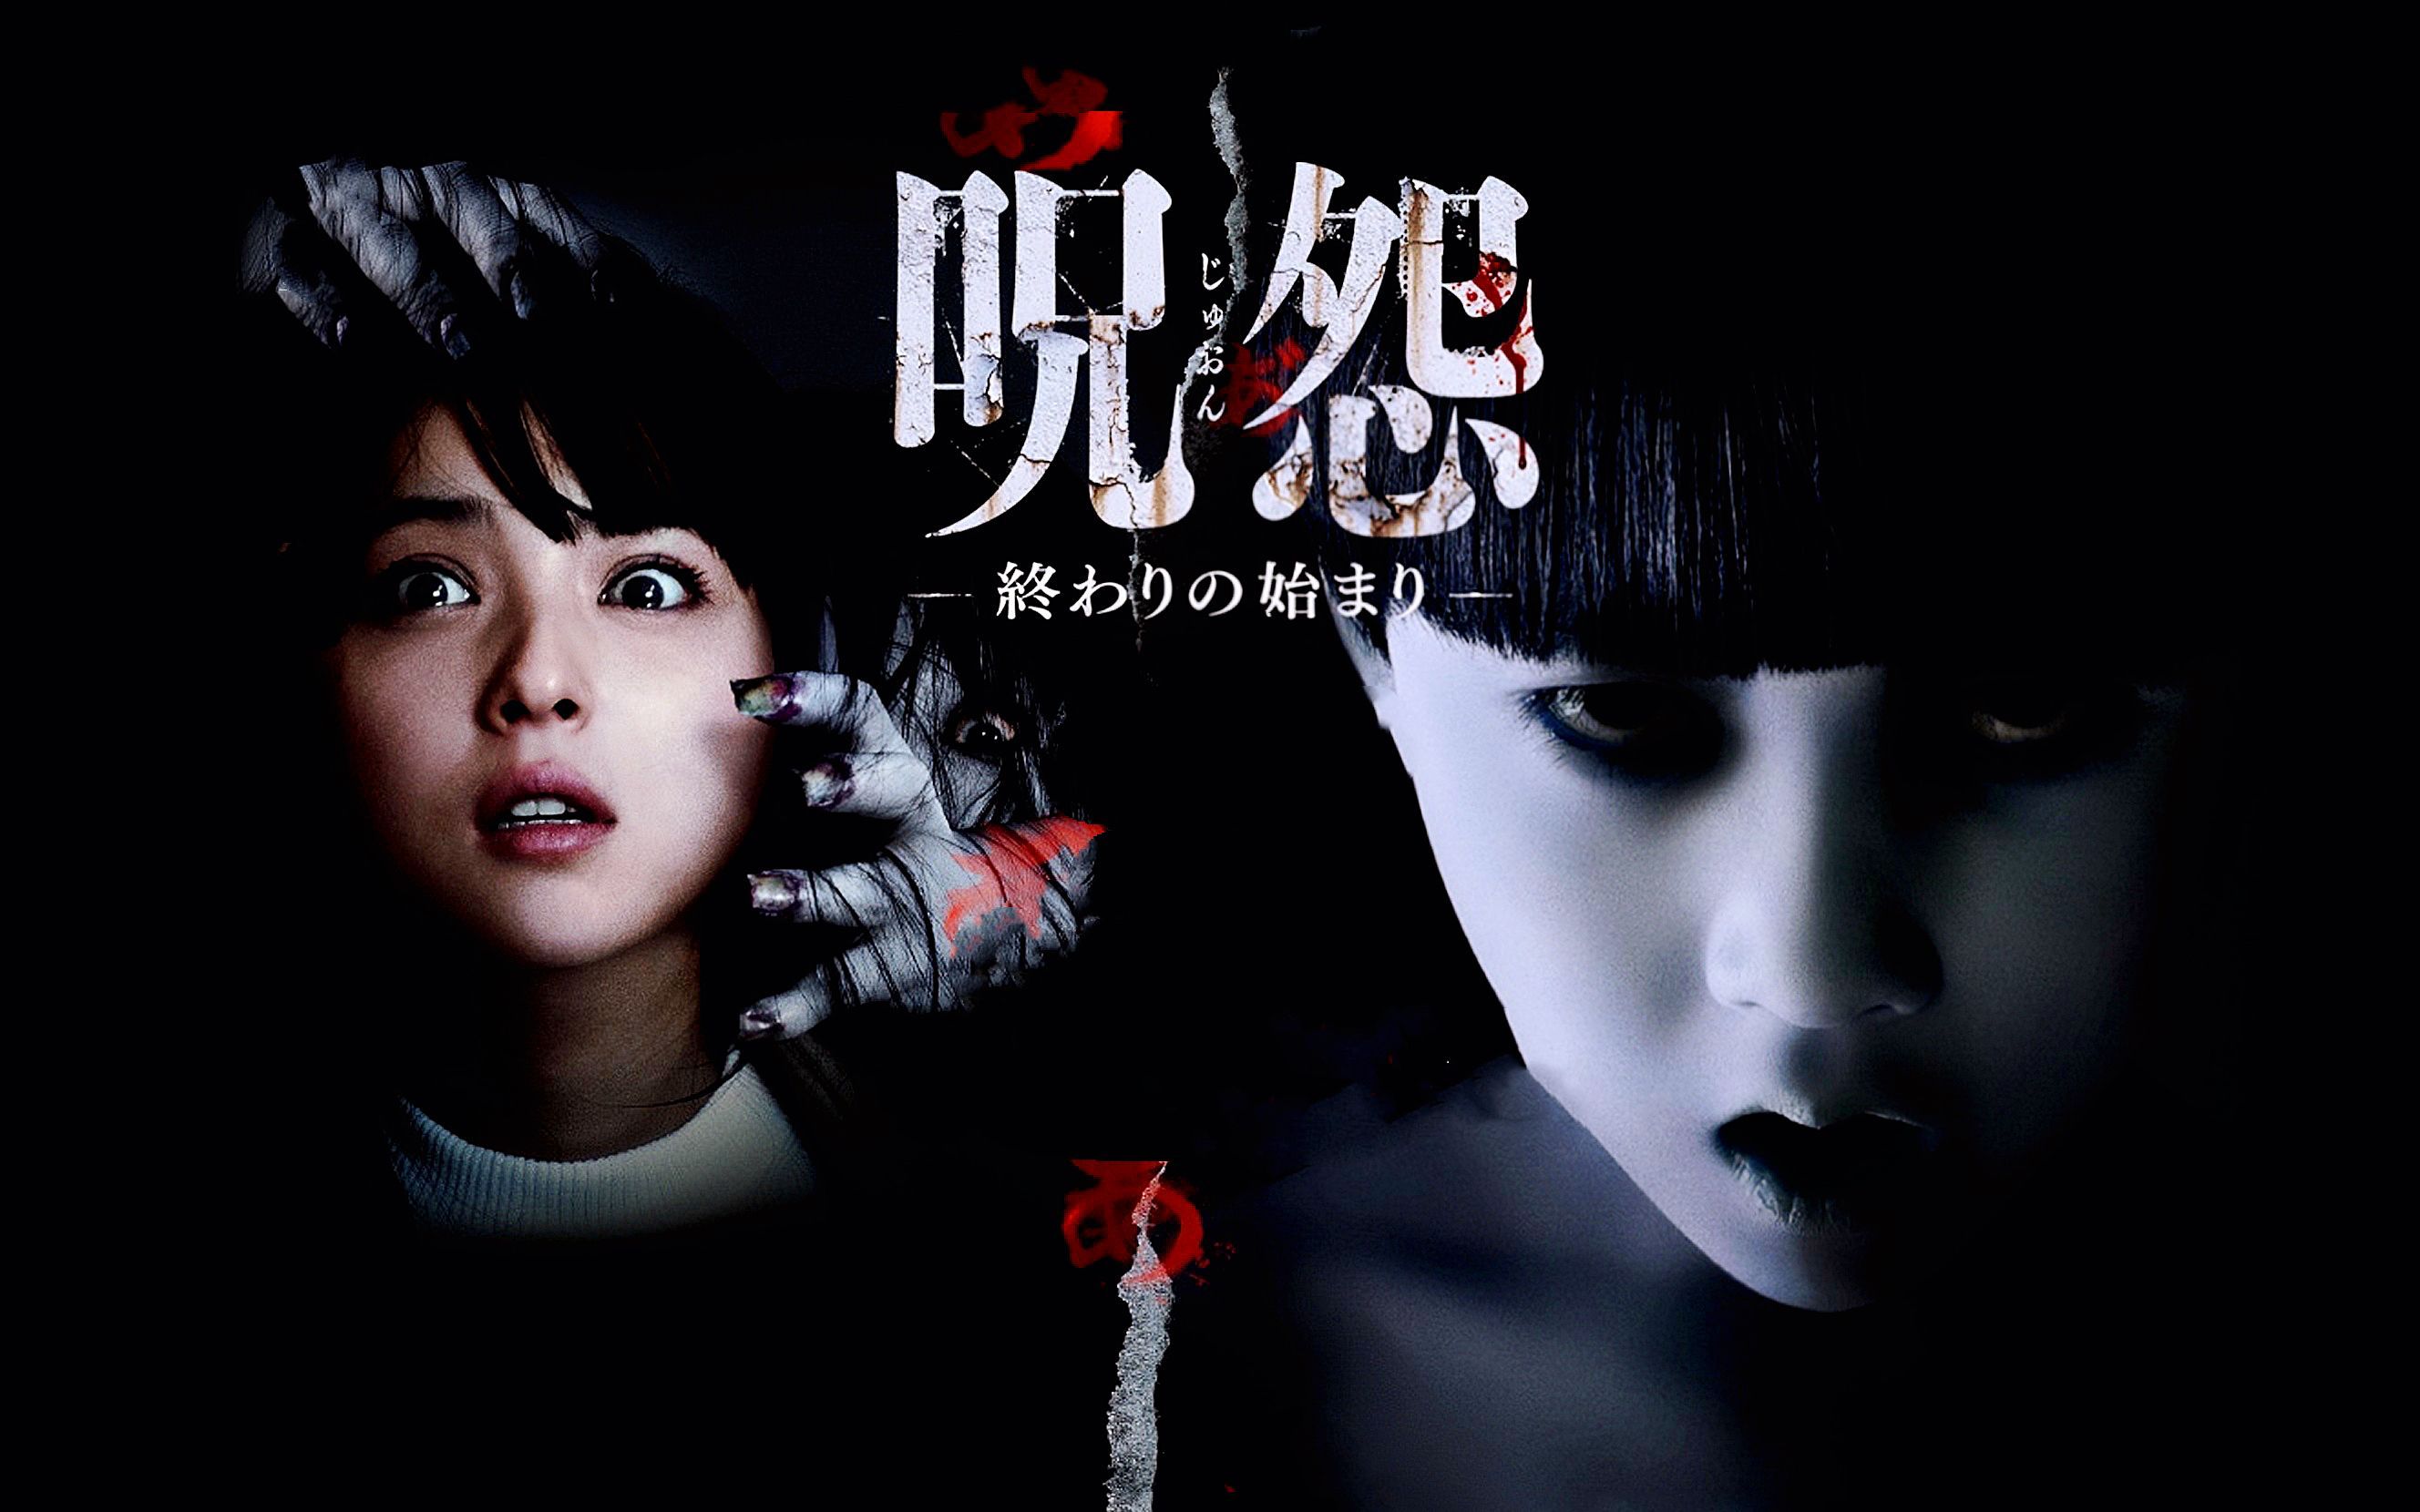 日本影史上最恐怖的电影《咒怨:终结的开始》它来了!